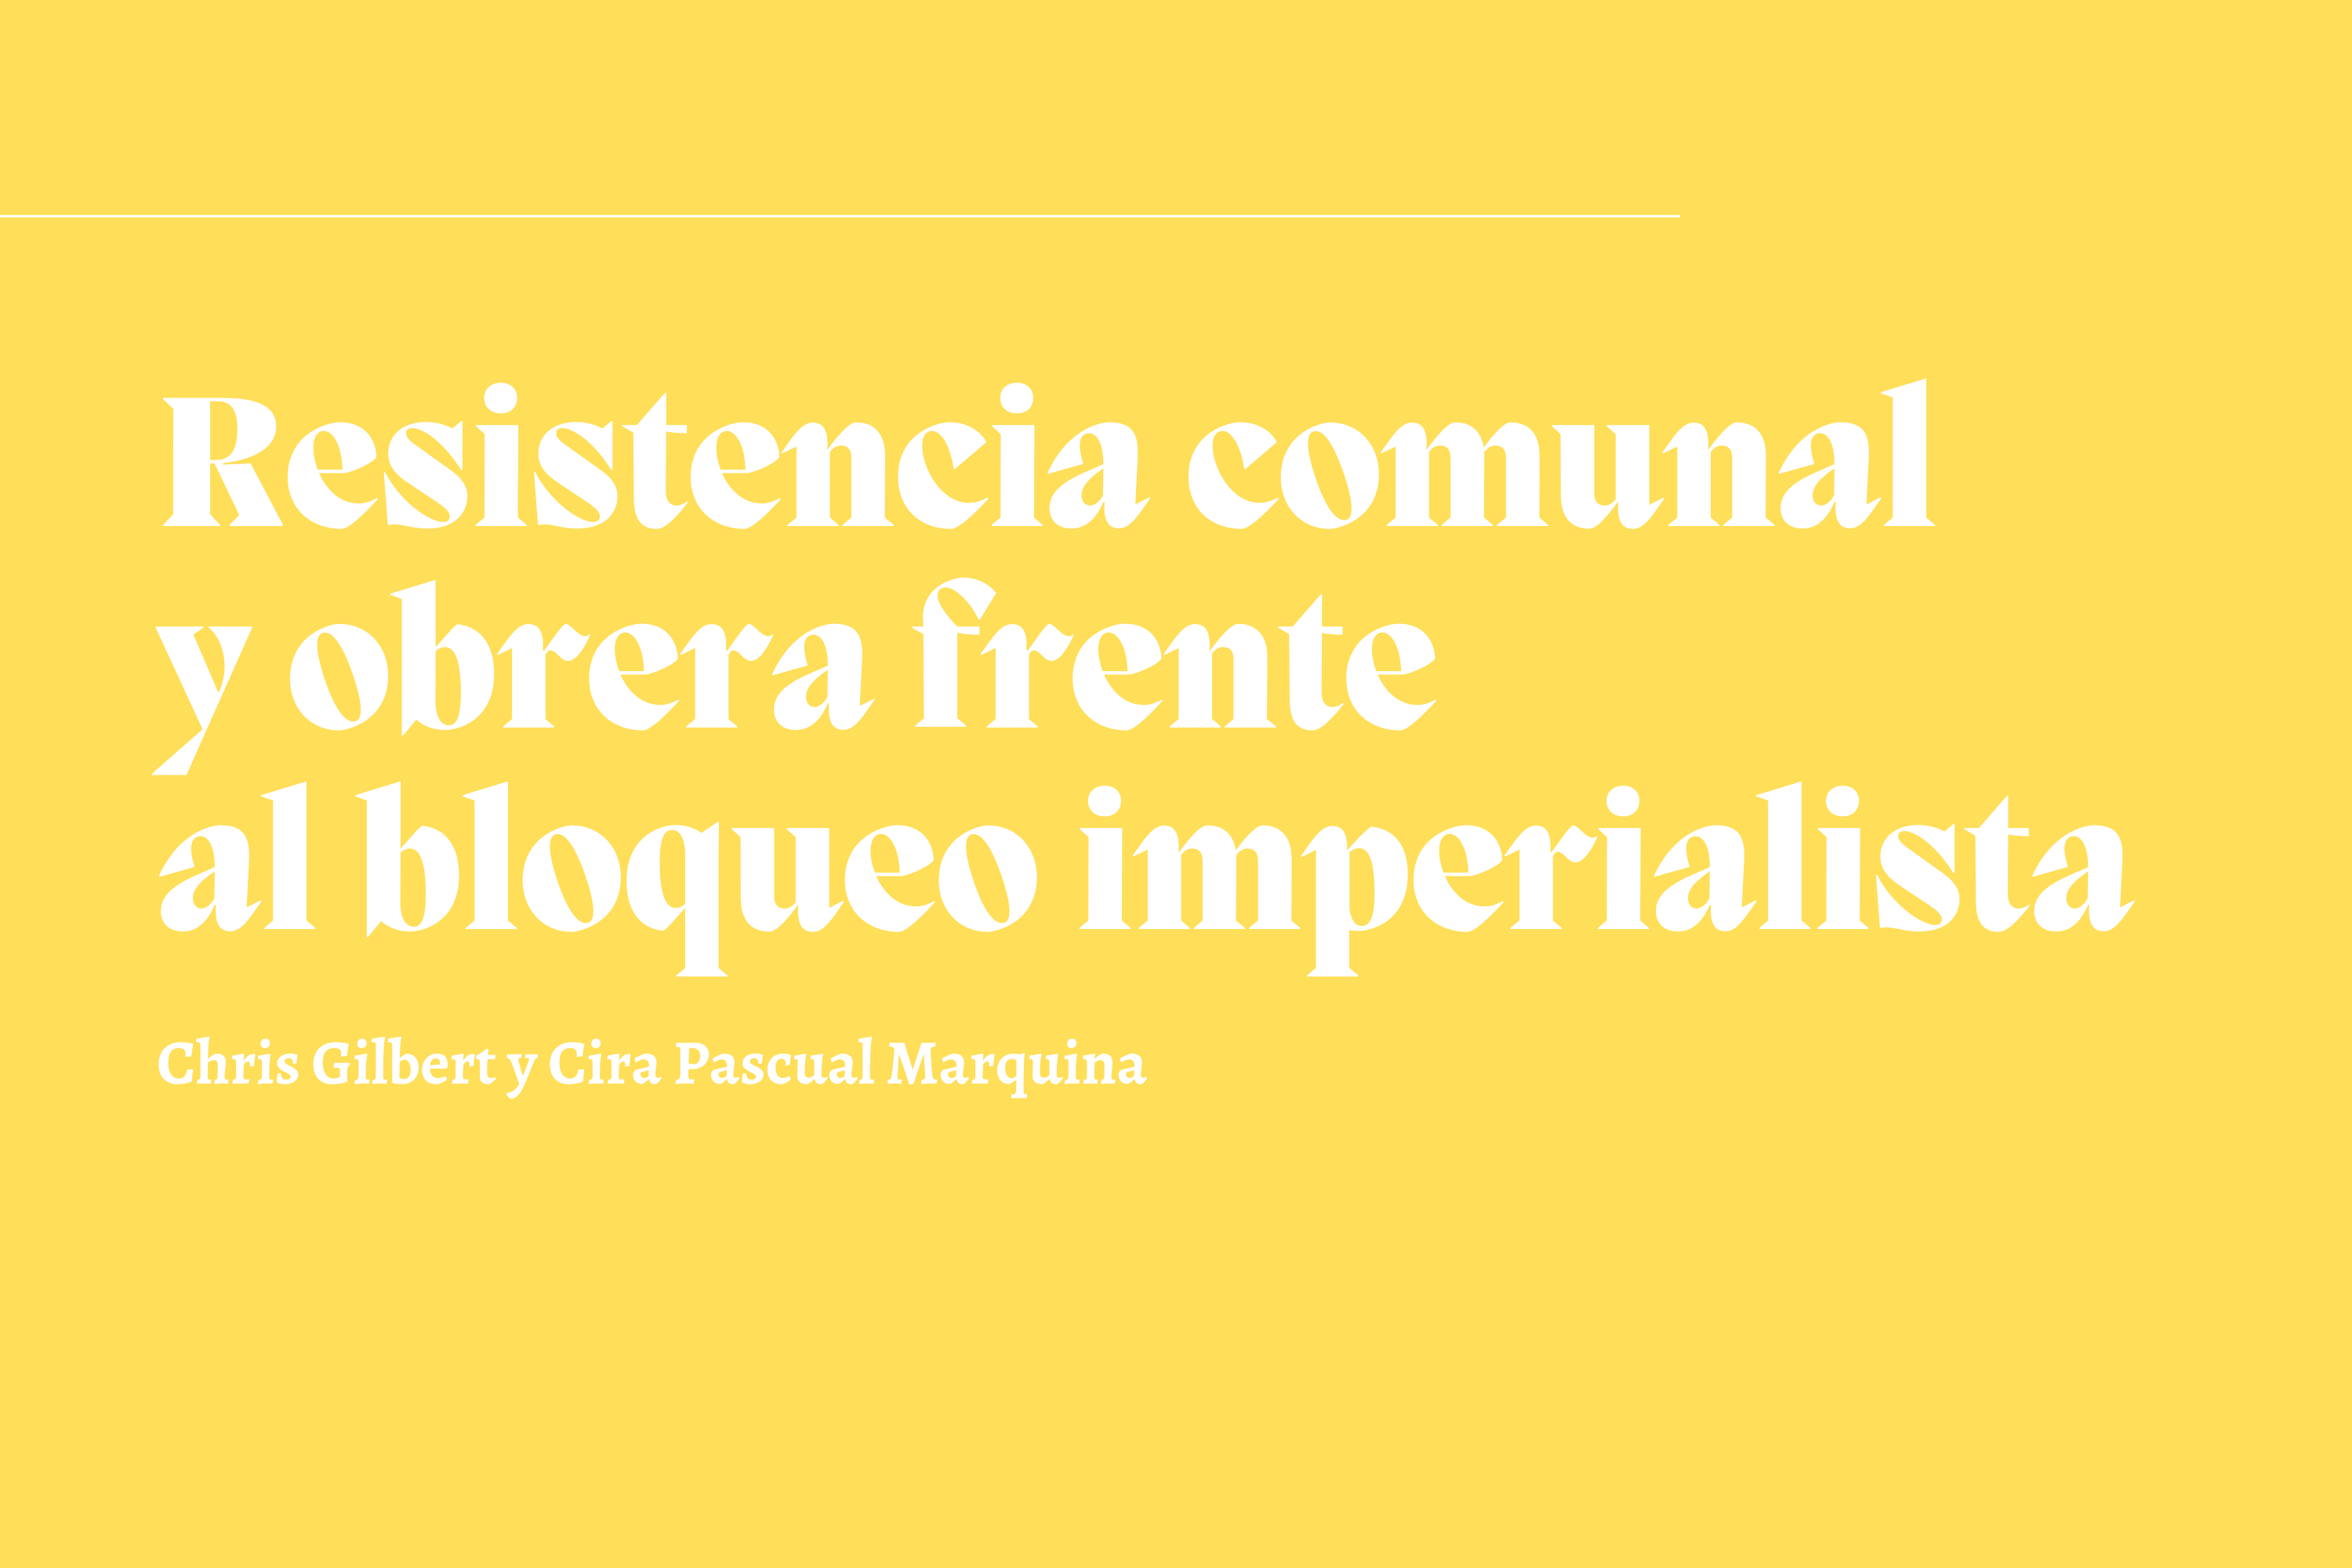 [PDF] Resistencia comunal y obrera frente al bloqueo imperialista